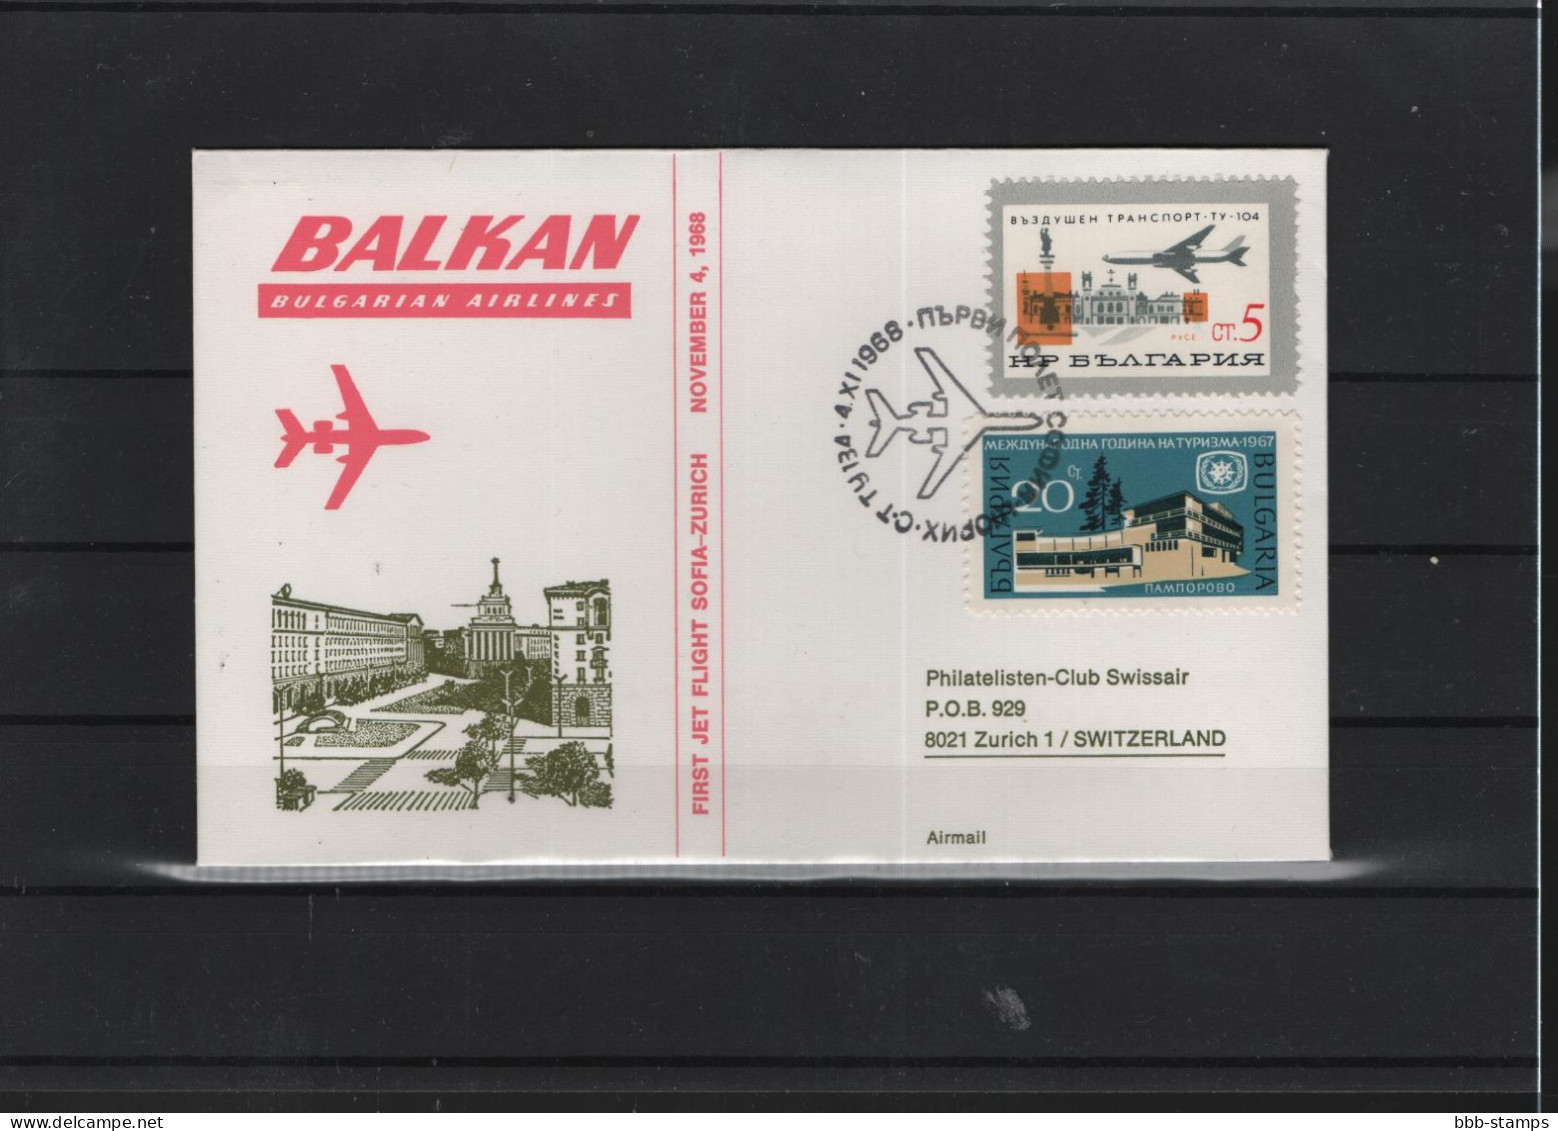 Schweiz Luftpost FFC  Balkan Air 4.11.1968 Zürich - Sofia Vv - Premiers Vols